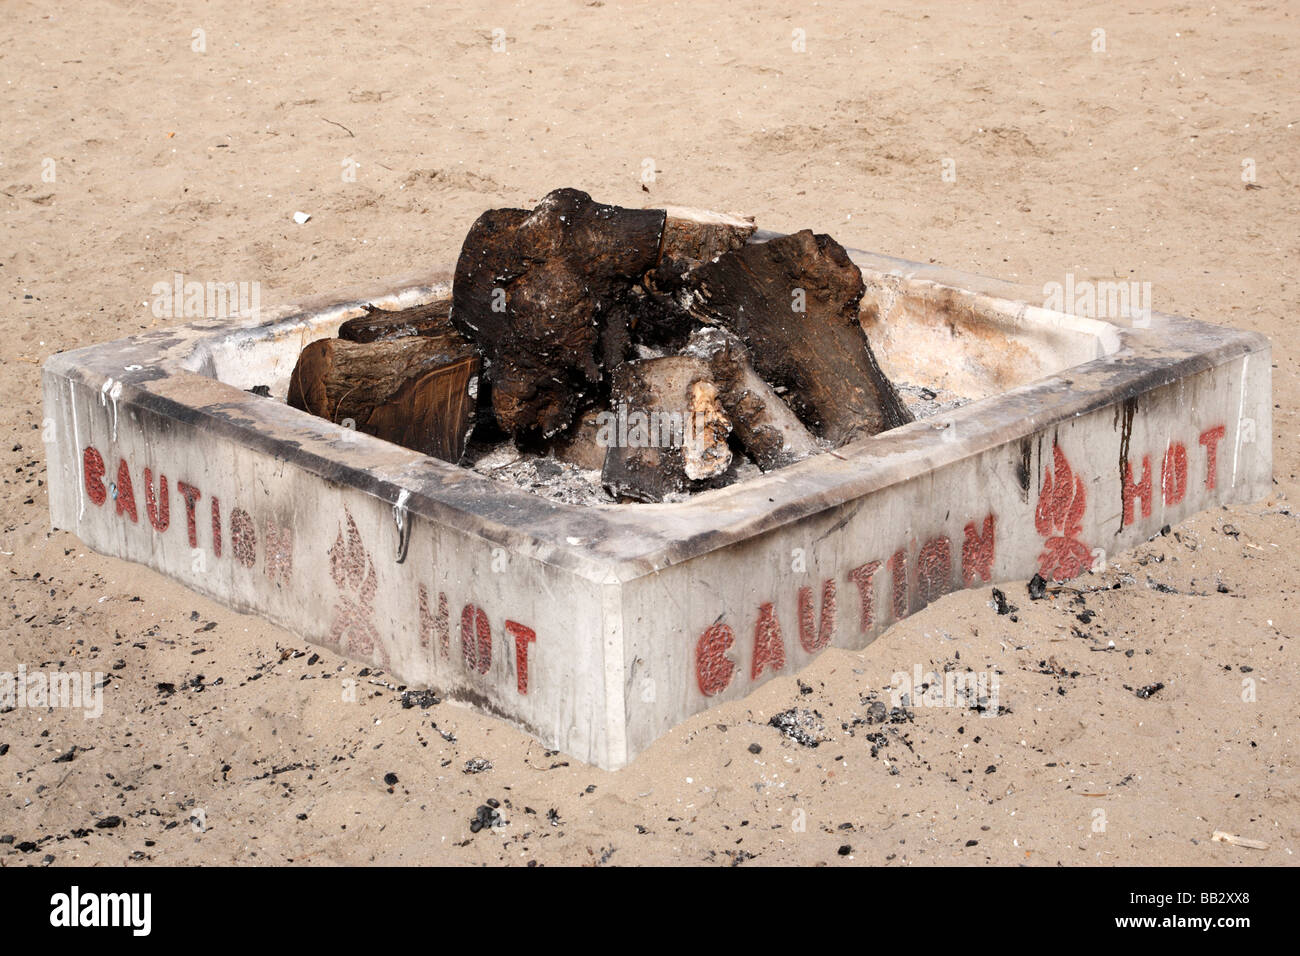 Una buca per il fuoco su una spiaggia shelter island san diego california usa Foto Stock